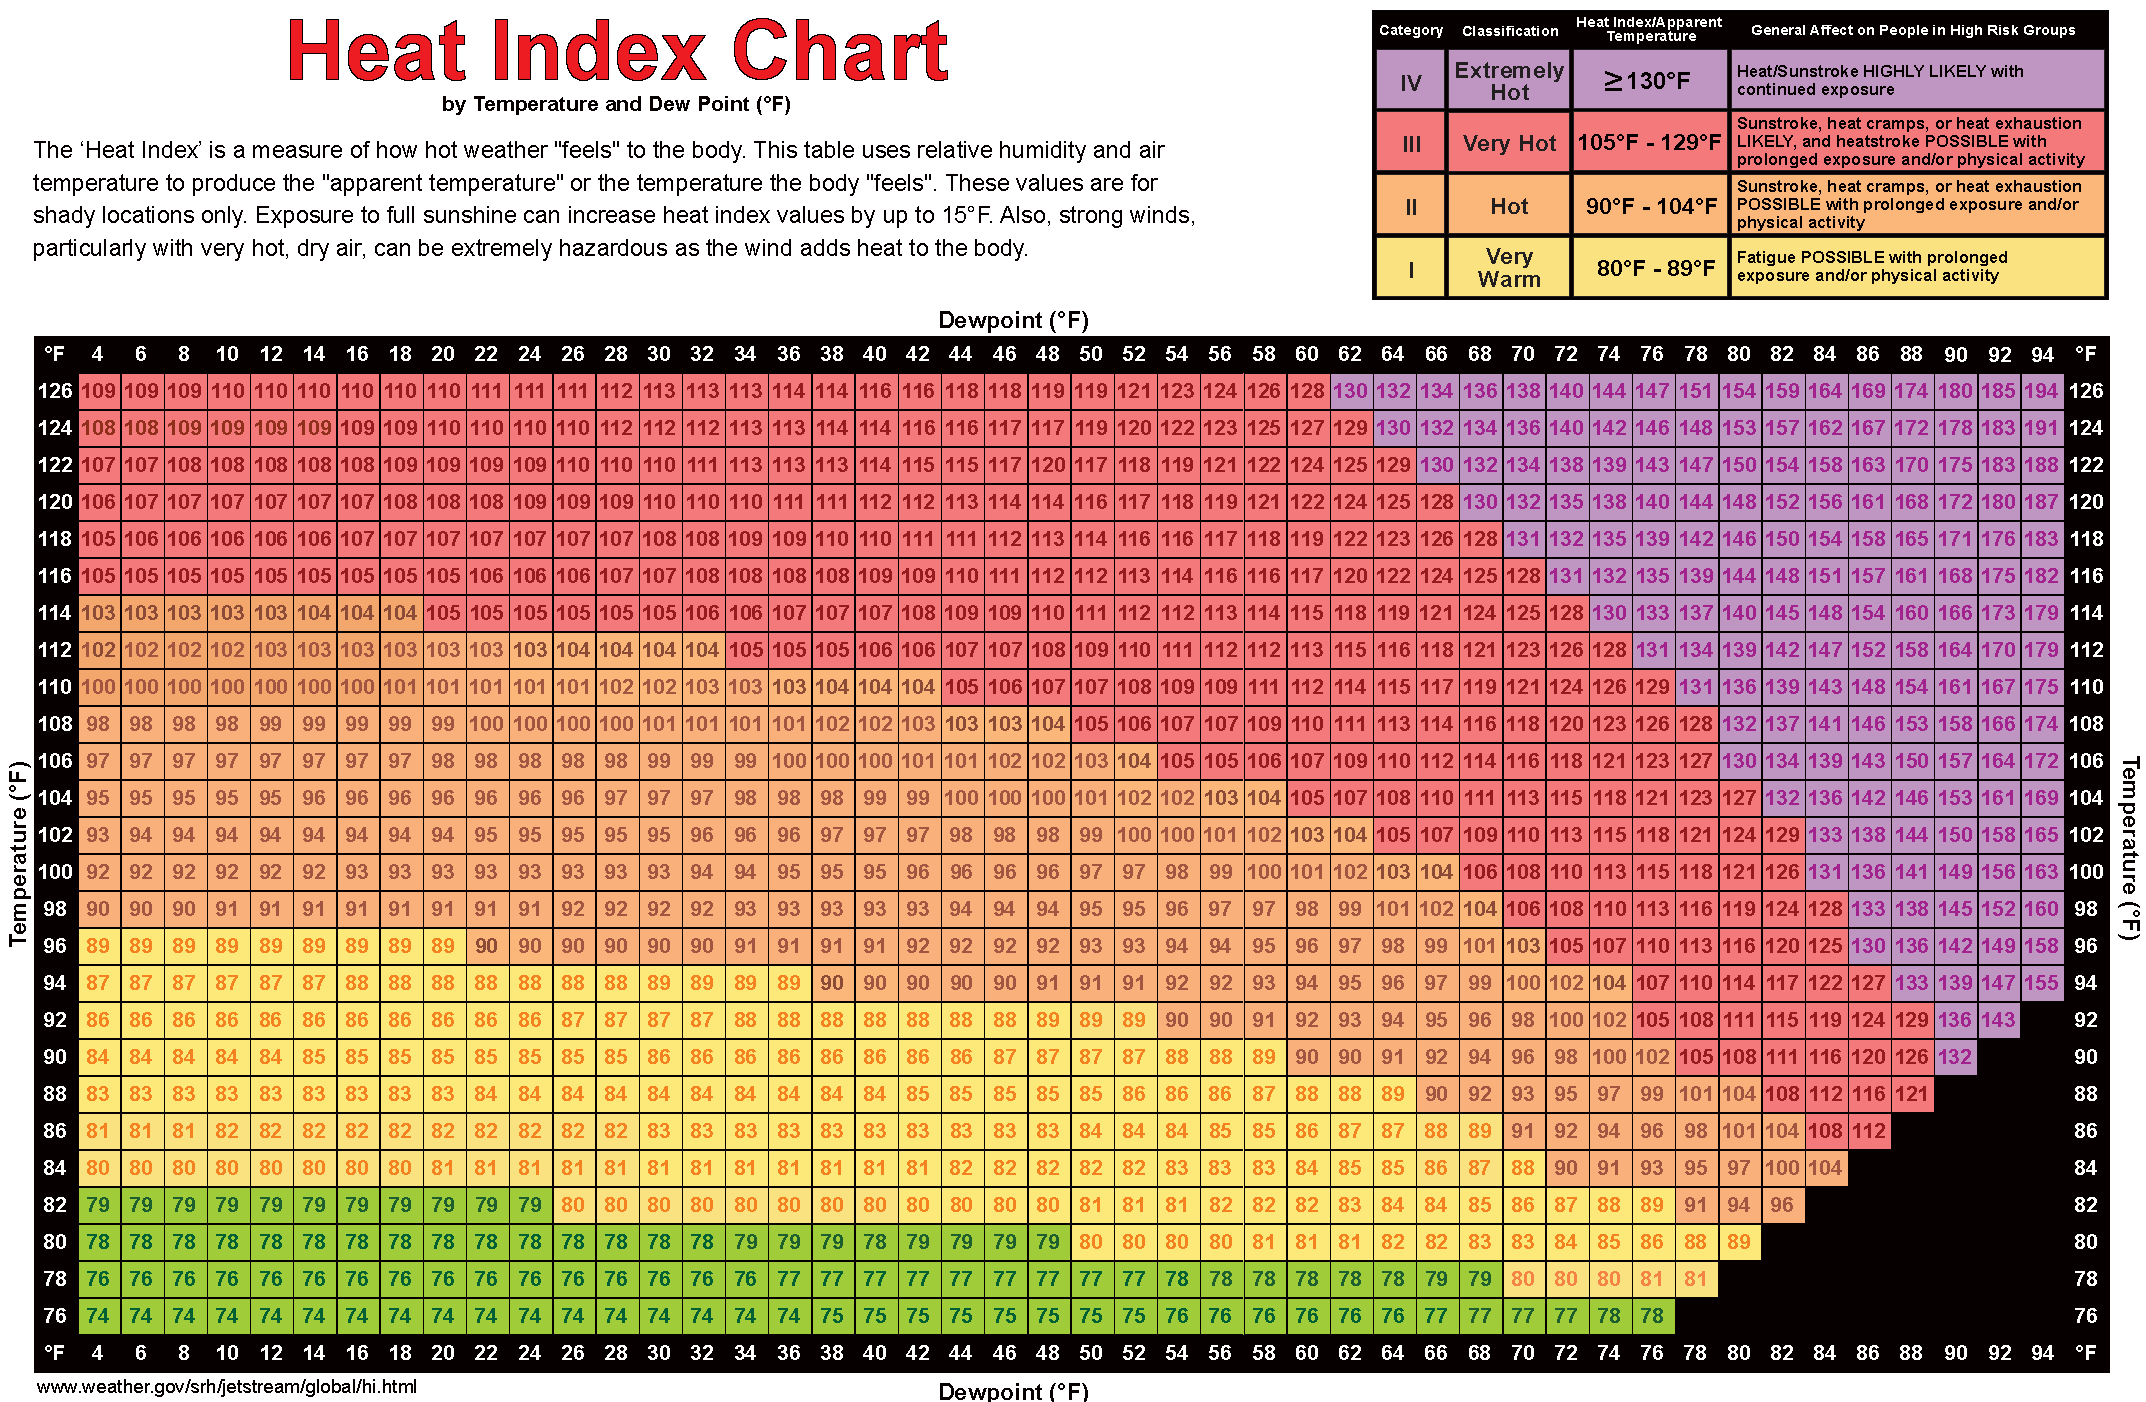 Humidex Temperature Chart